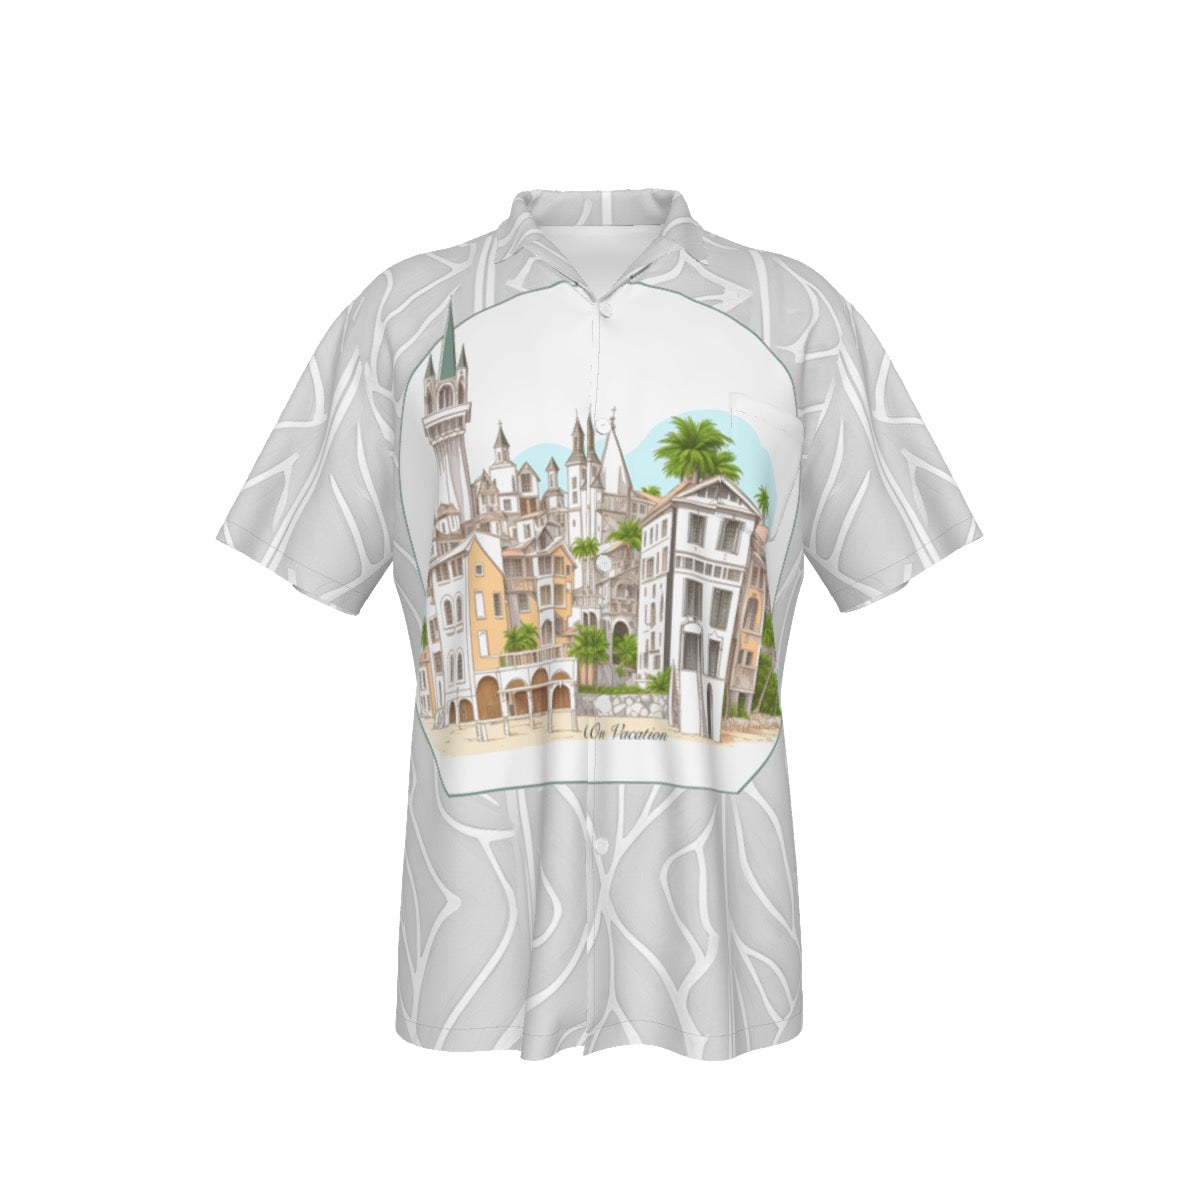 On Vacation -- Men's Hawaiian Shirt With Pocket